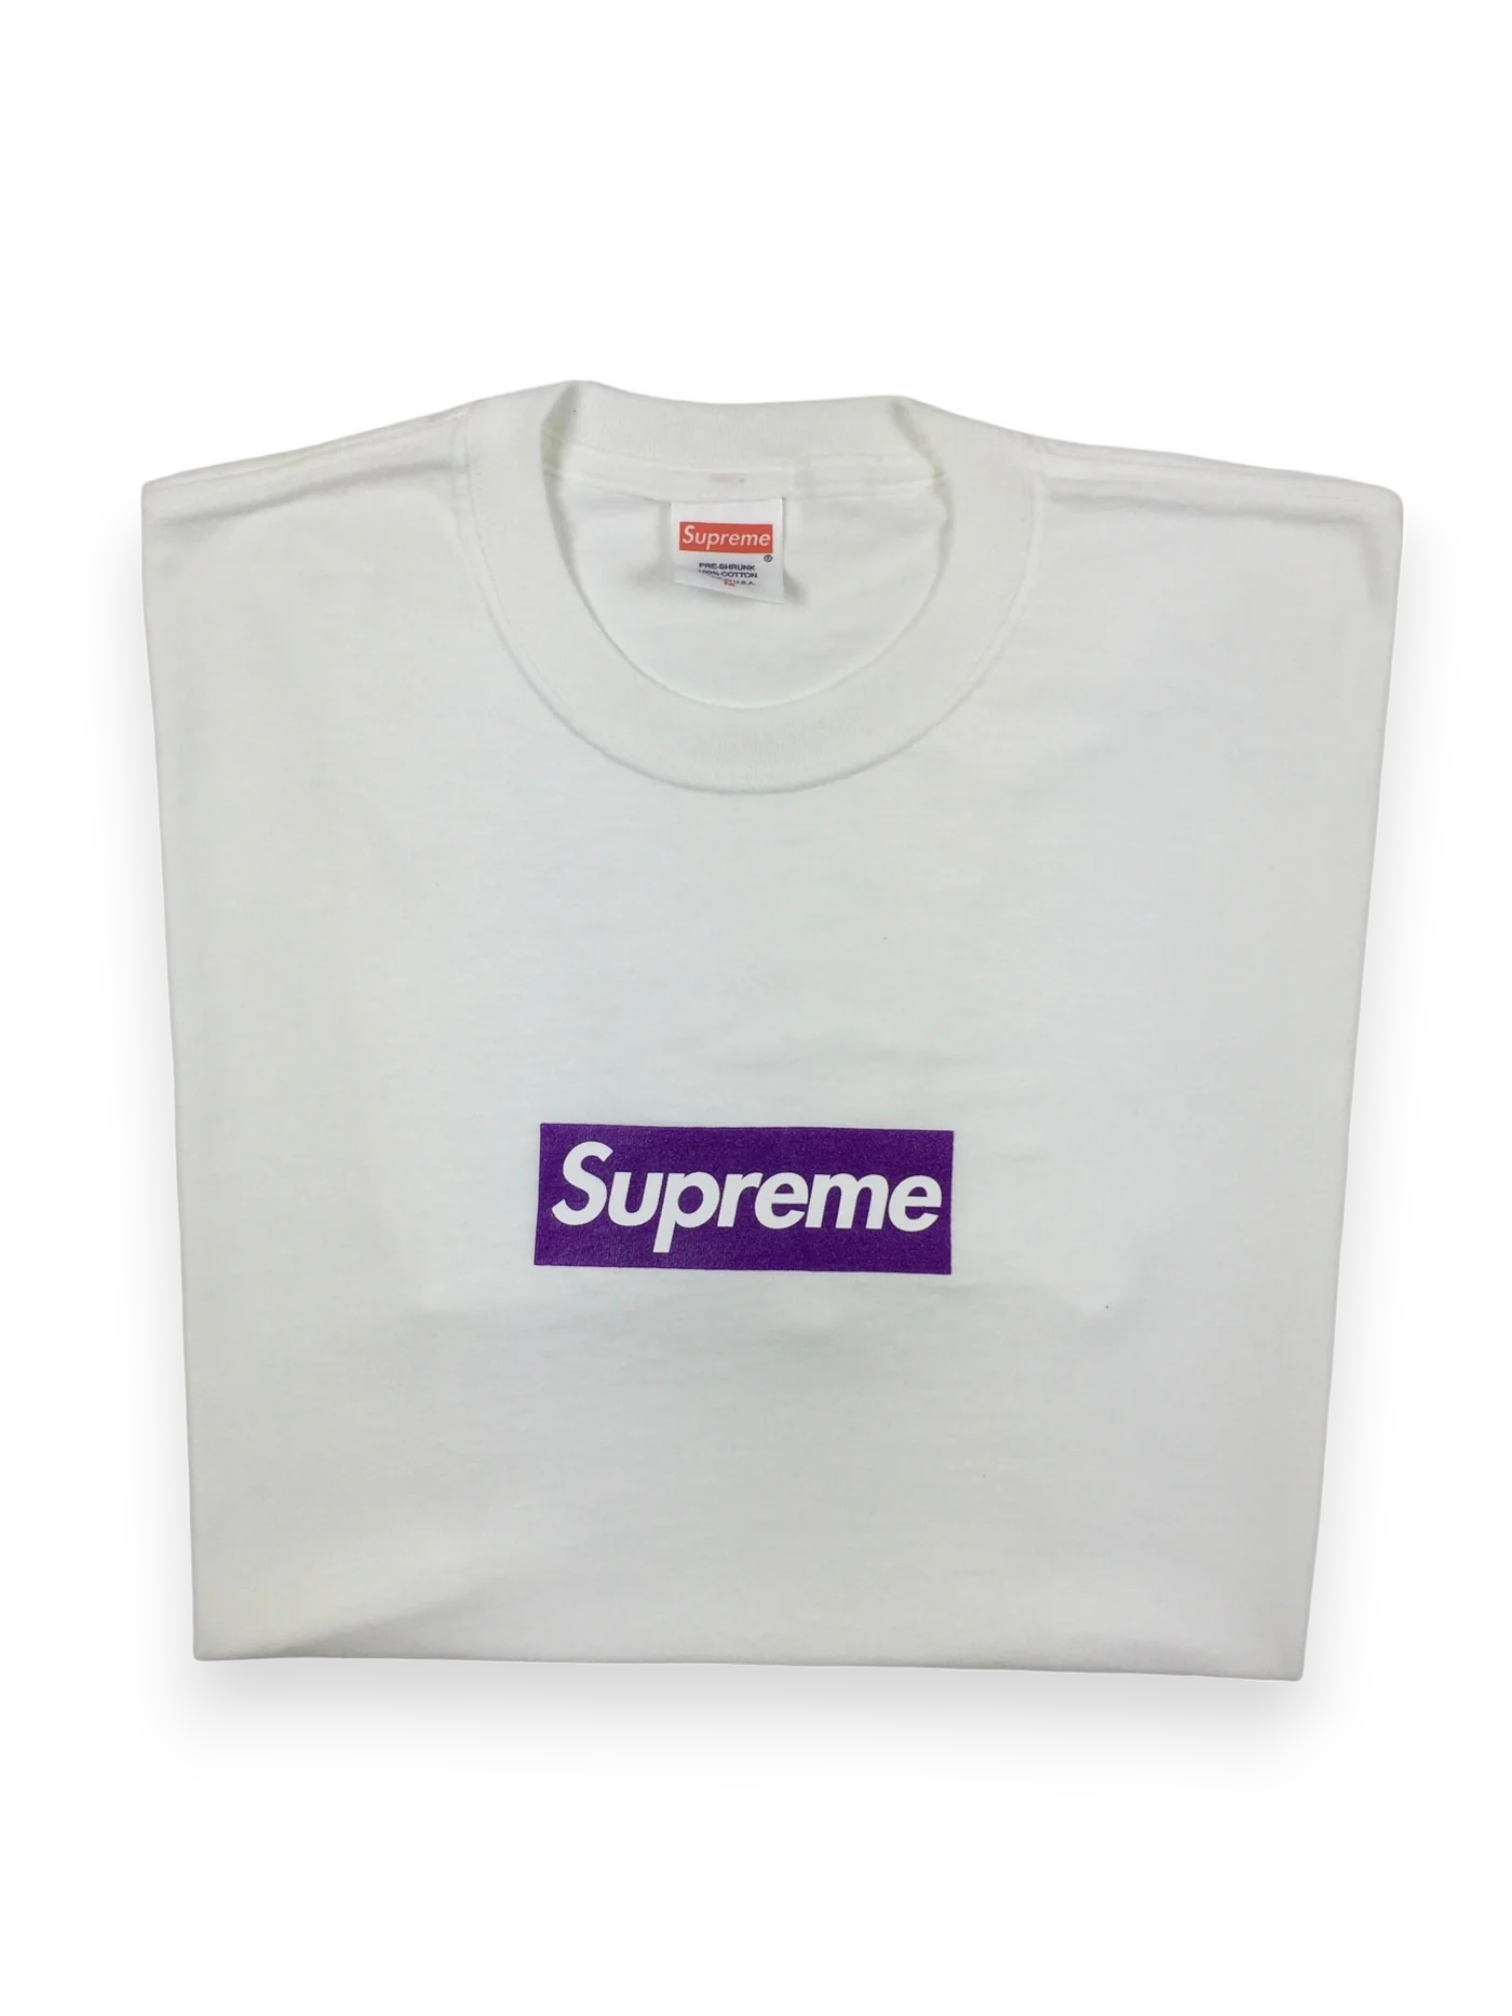 2012 Supreme Unreleased F&F Purple White Box Logo Tee